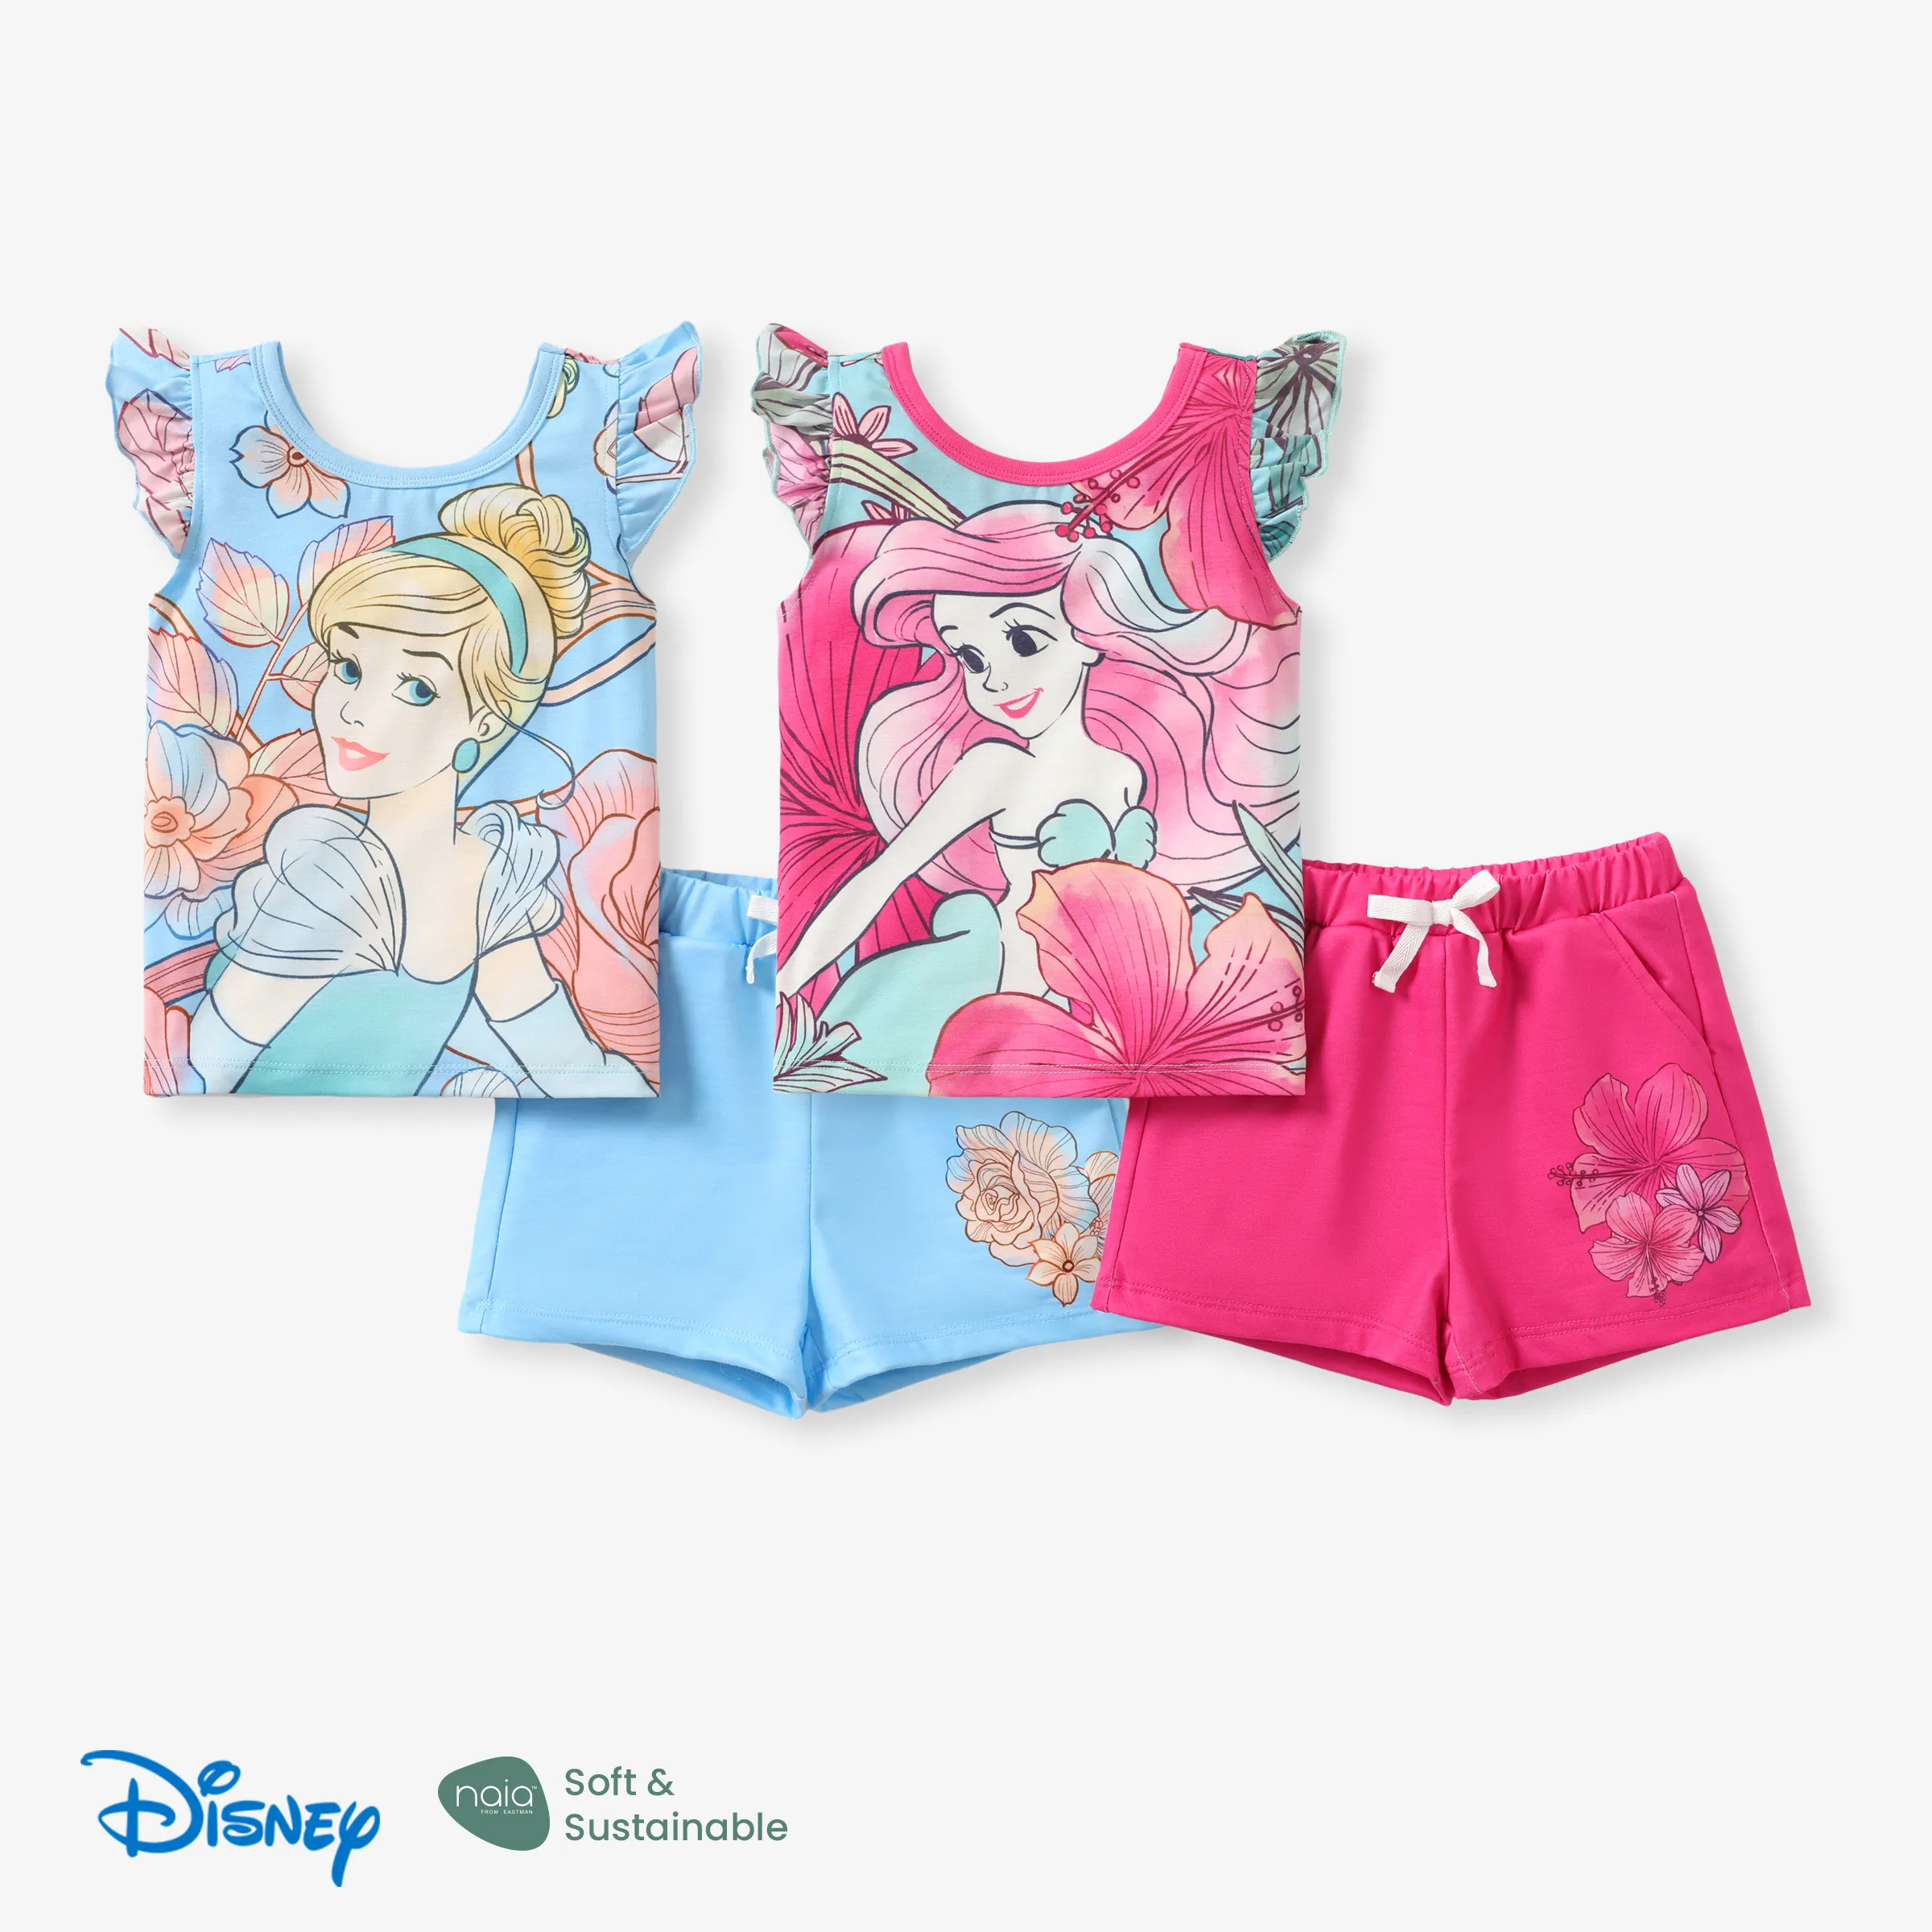 

Disney Princess 2pcs Toddler Girls Naia™ Character Floral Print Ruffled Top with Shorts Set